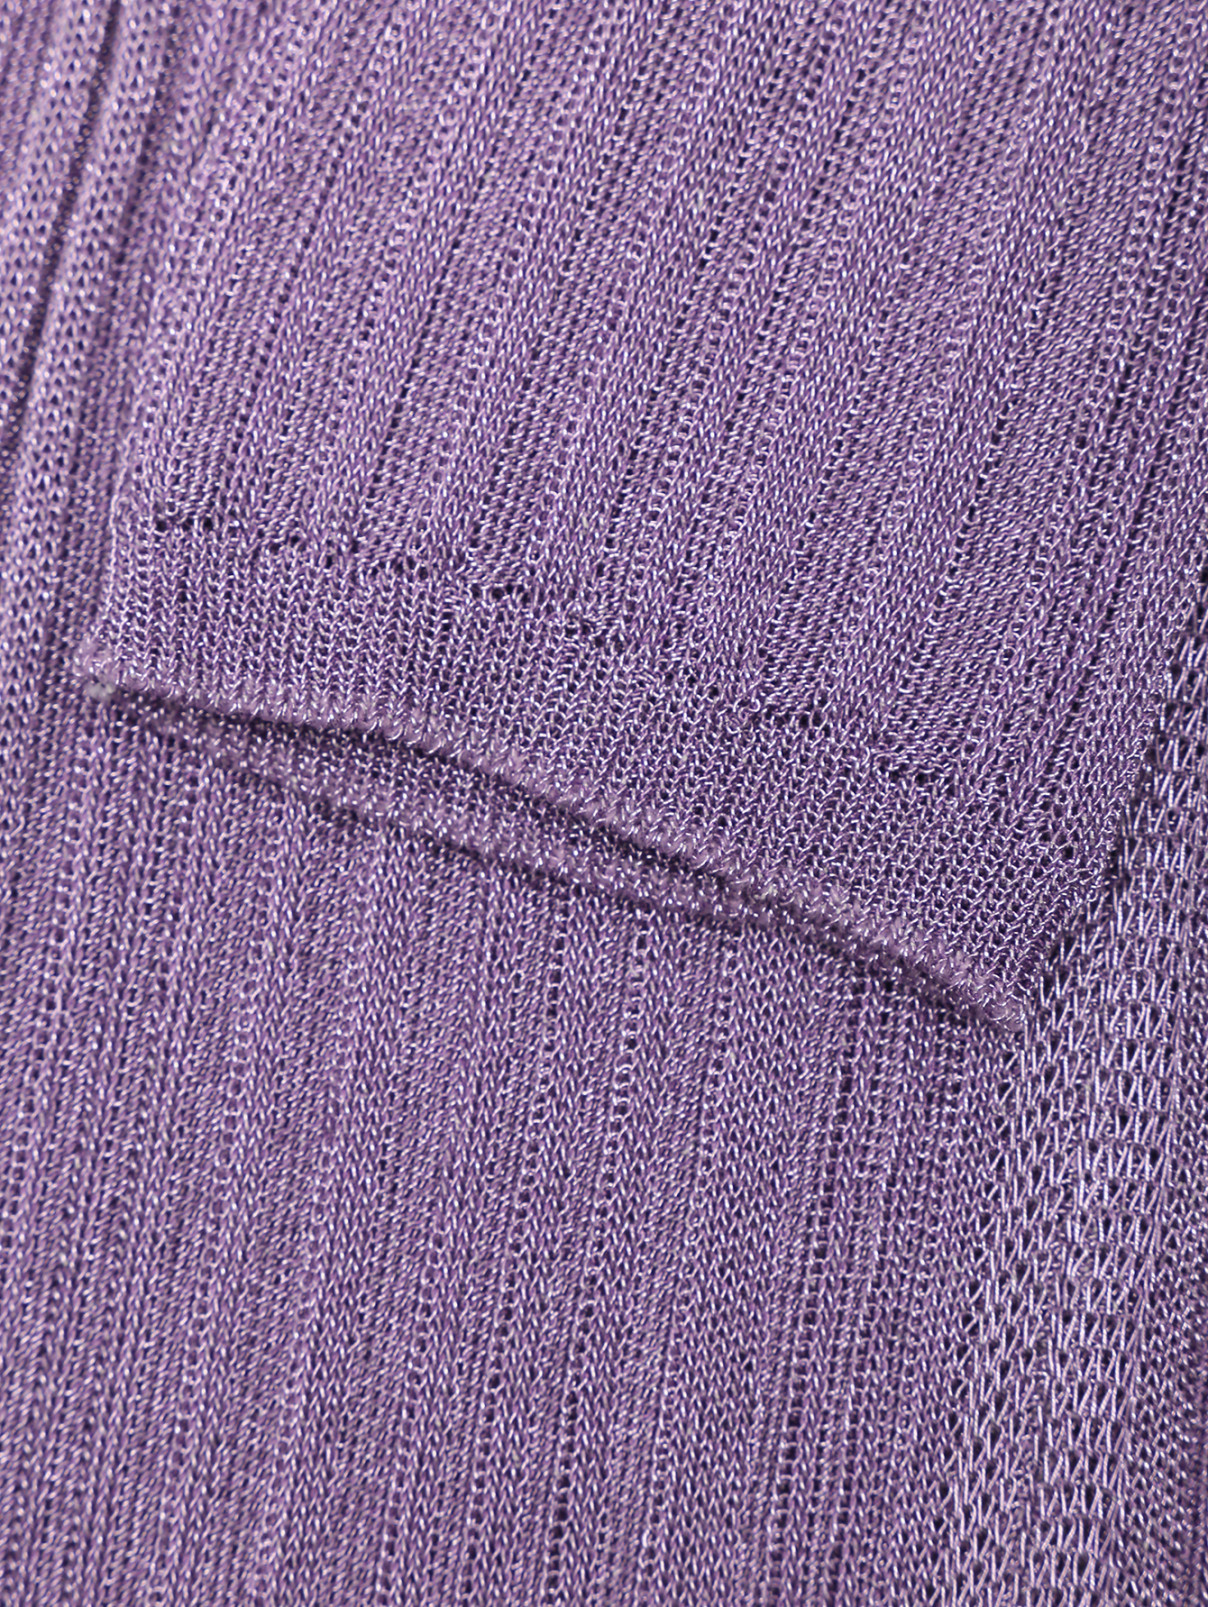 Удлиненный кардиган из смешанной вискозы на пуговице Dorothee Schumacher  –  Деталь1  – Цвет:  Фиолетовый